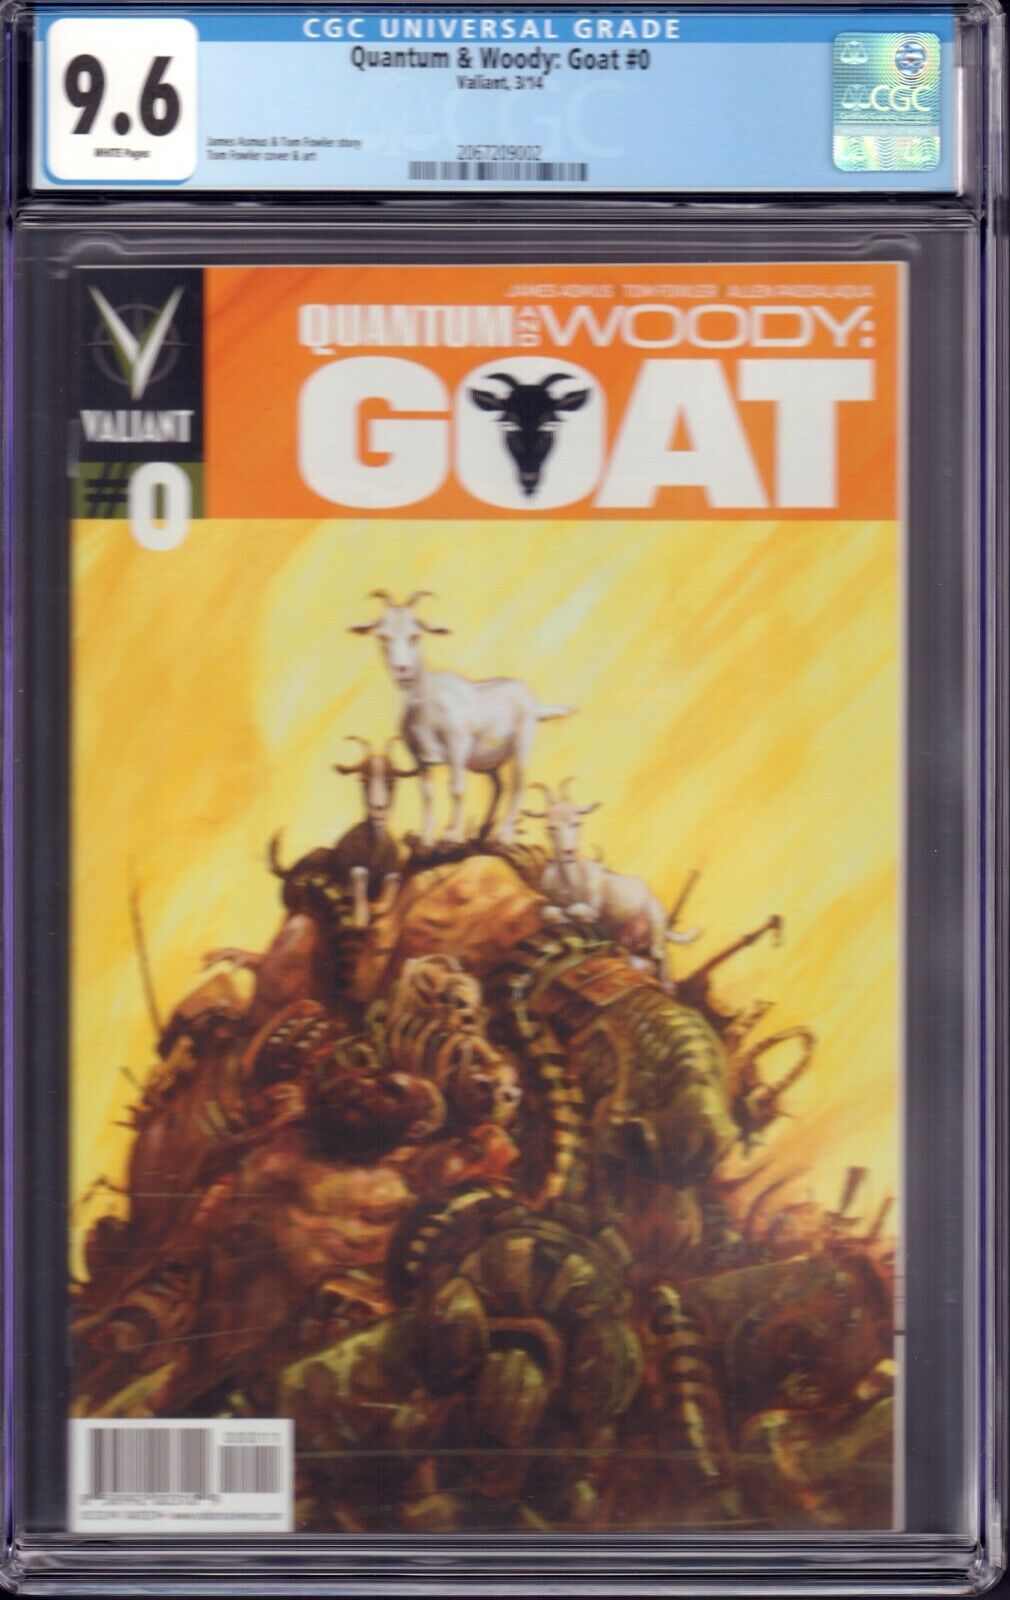 Quantum & Woody: Goat #0 (Valiant, 2014) CGC 9.6